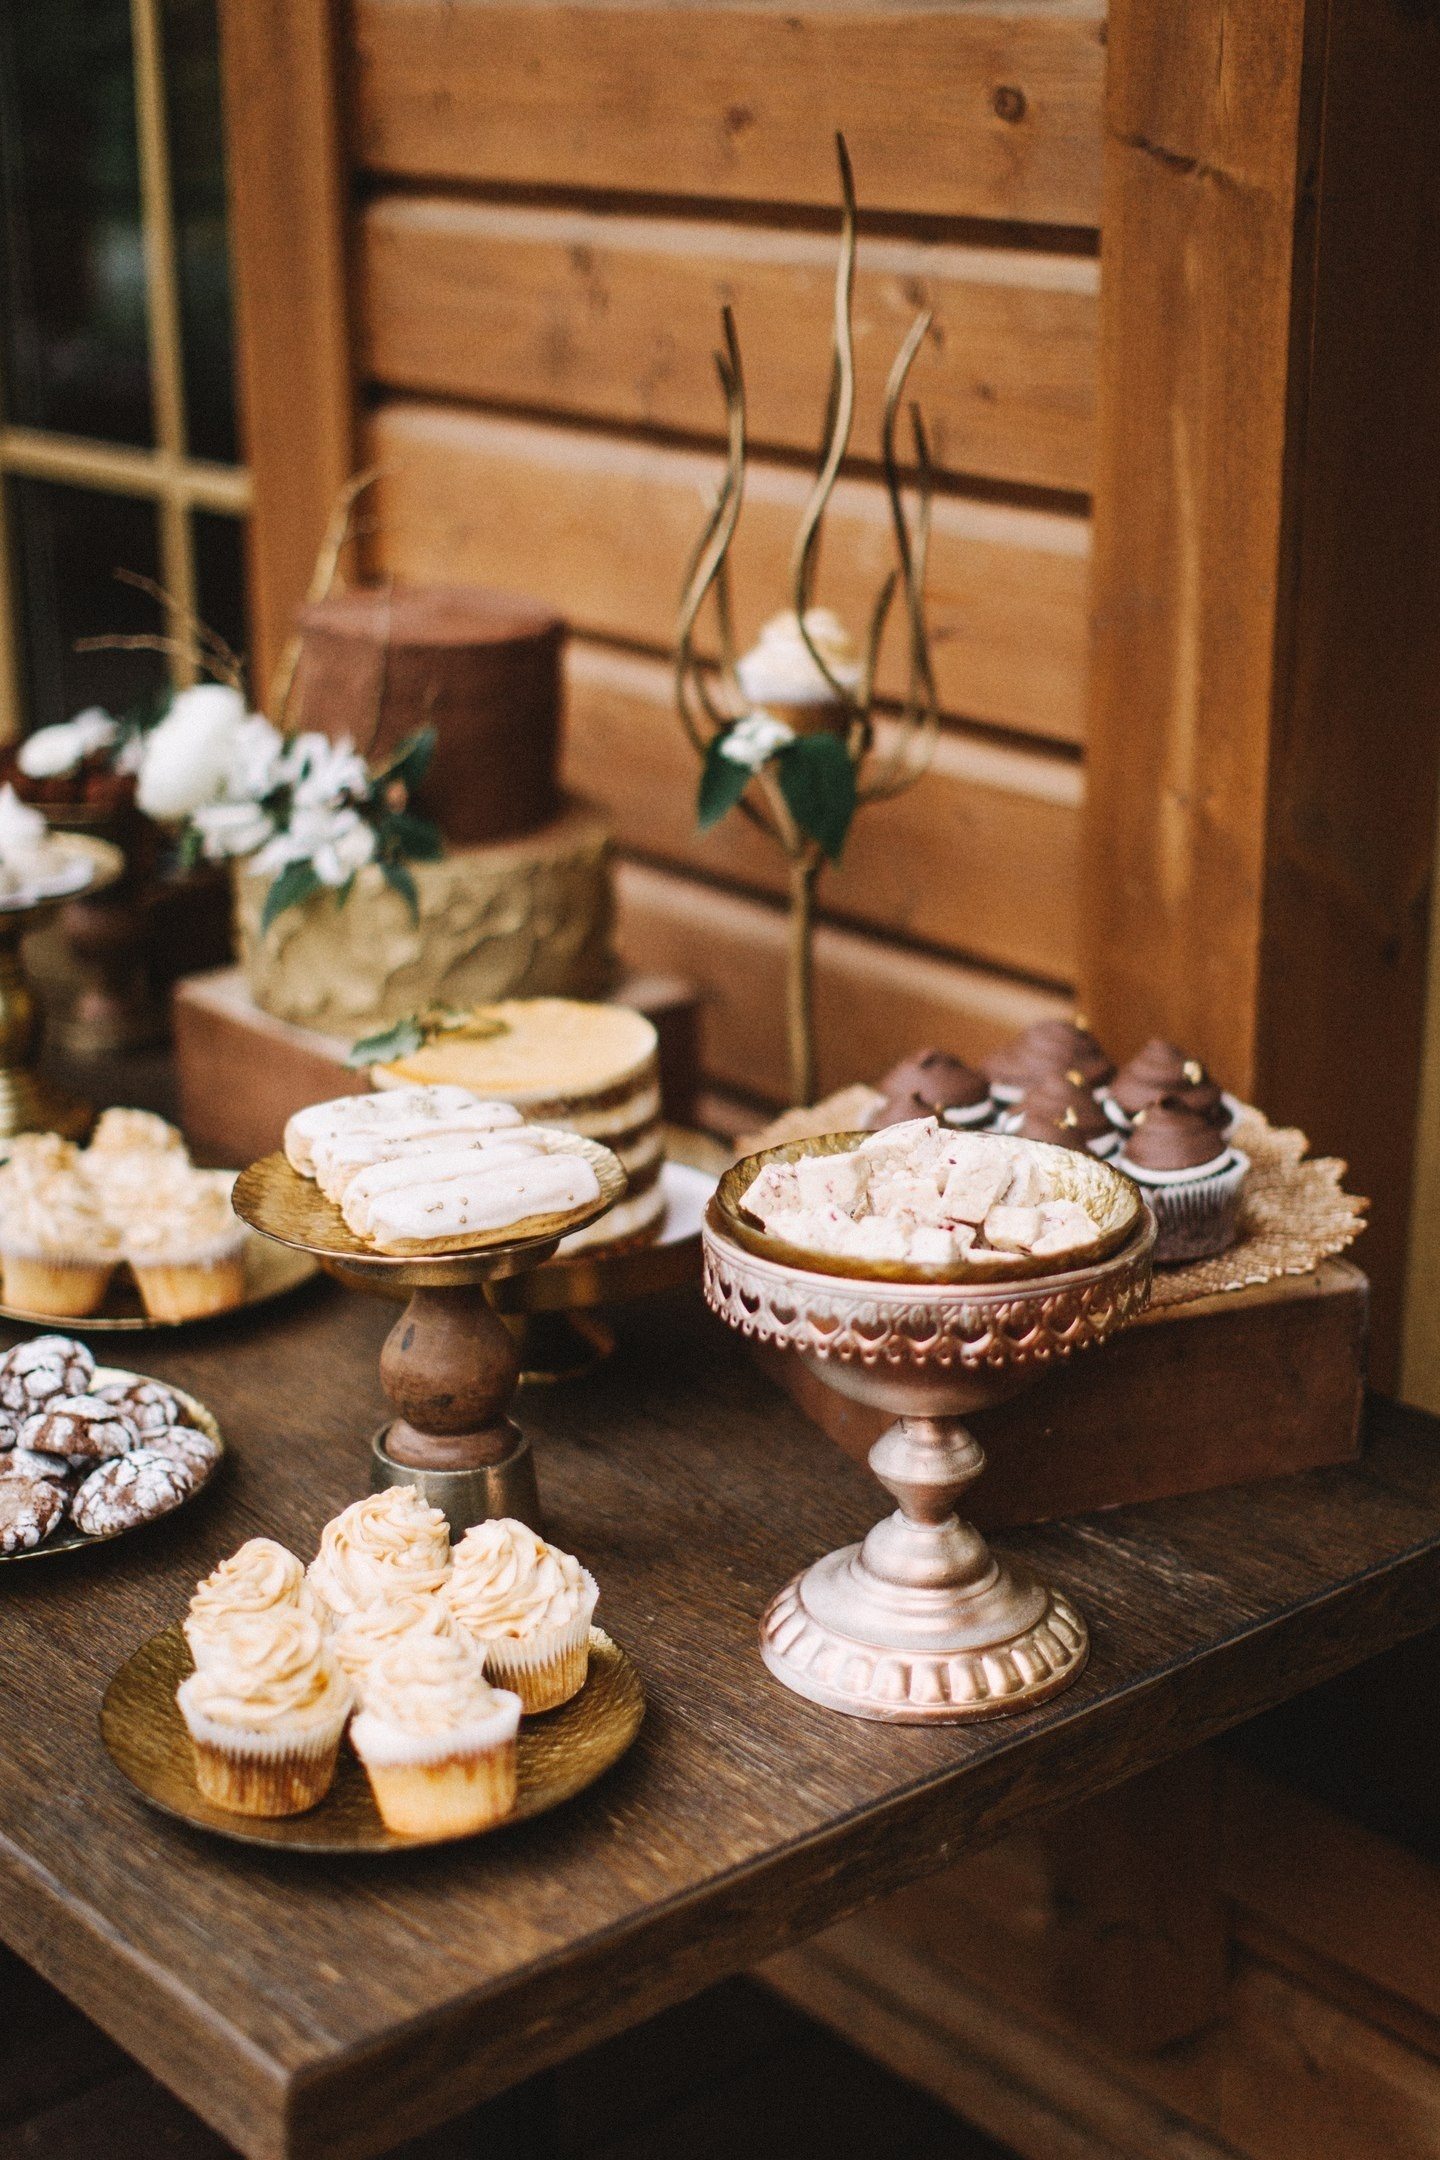 Brutna barer med choklad, tryffel, mjuka luftiga efterrätter, dekorerad med kaffebönor och openwork-kakor med isbildning i bröllopsstil, ser bra ut i sällskap med åldrade lådor och utsmyckade ställen